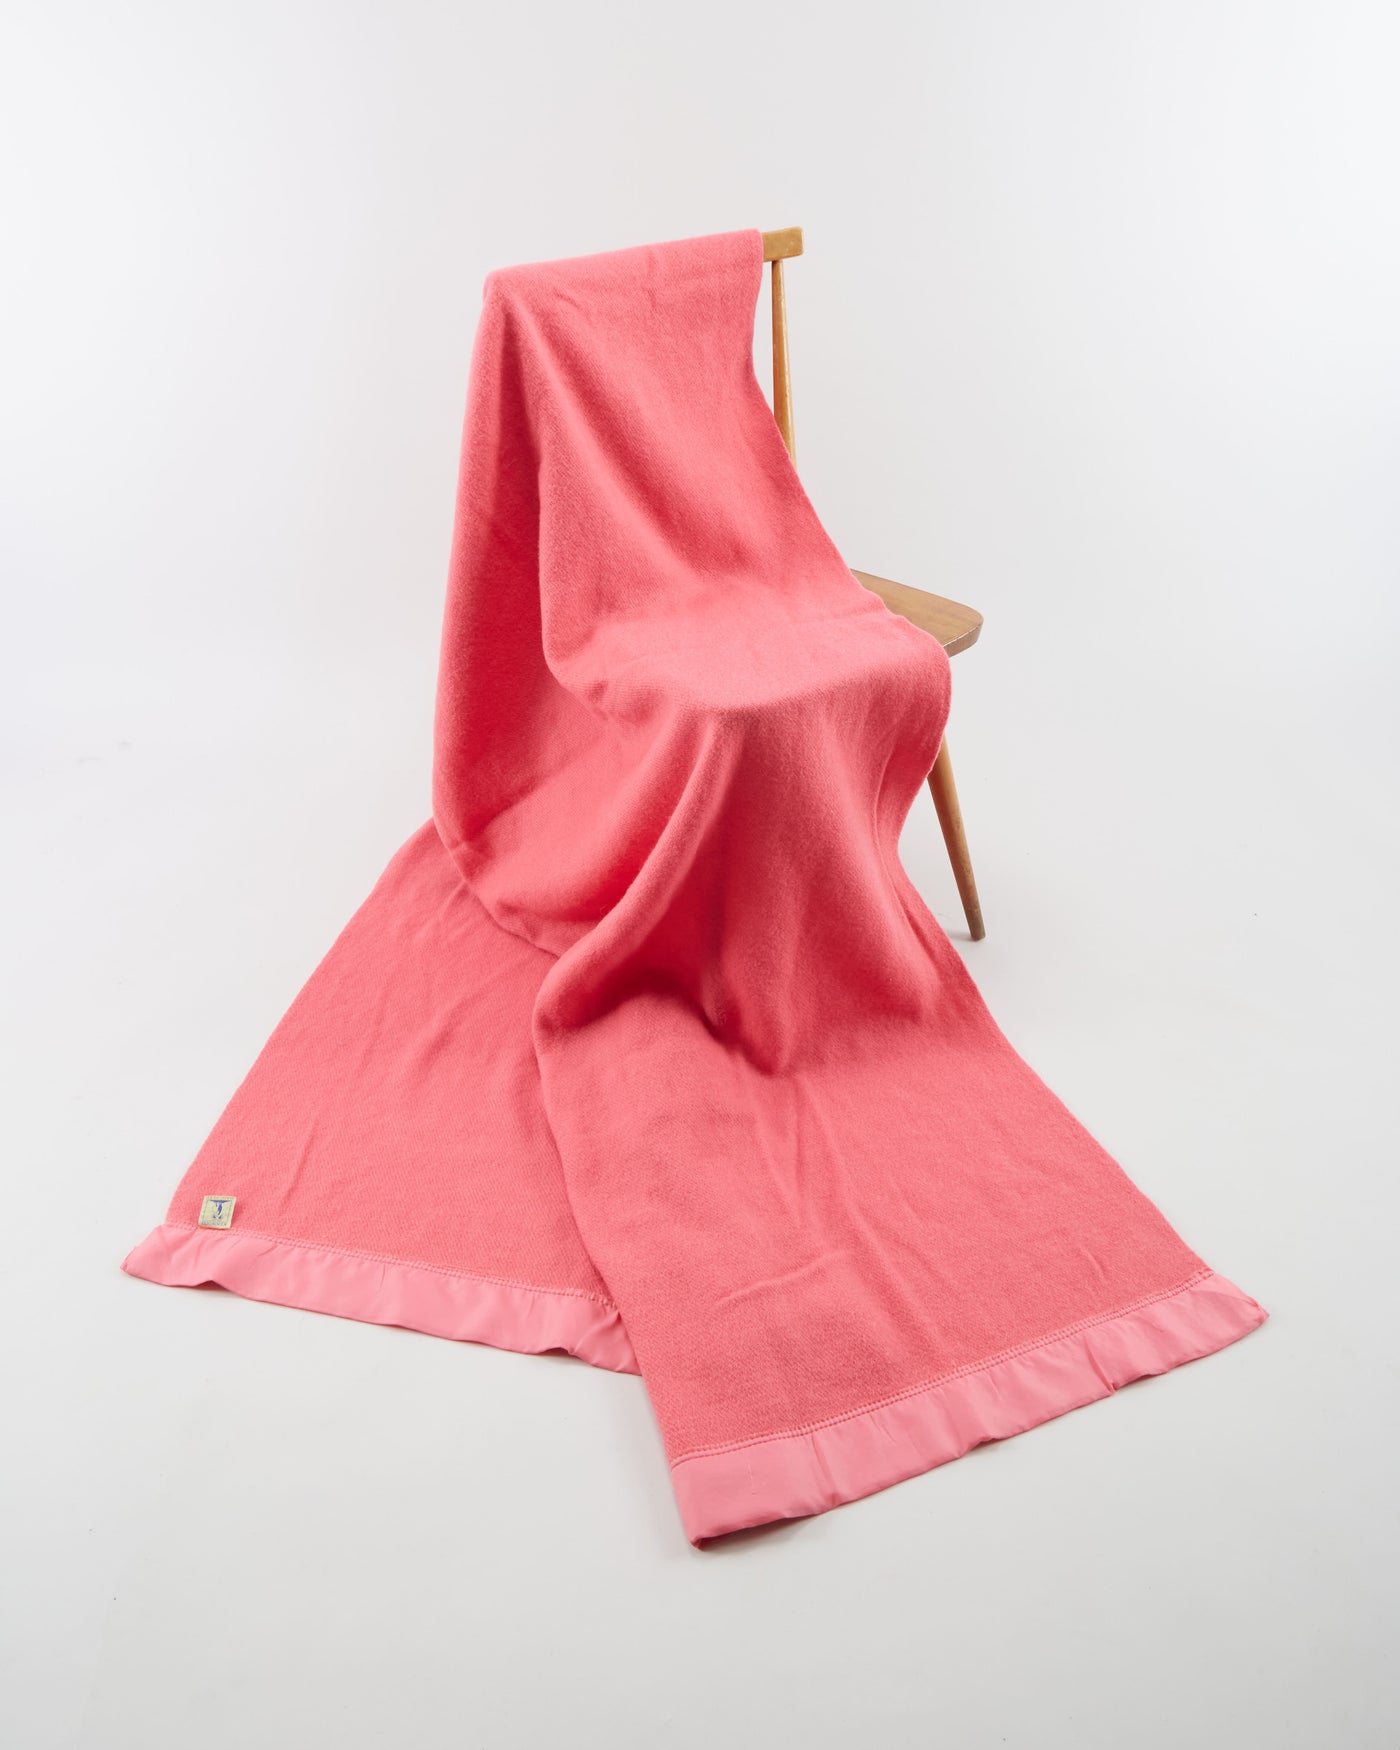 Kenwood Ramcrest Pink Wool Blanket